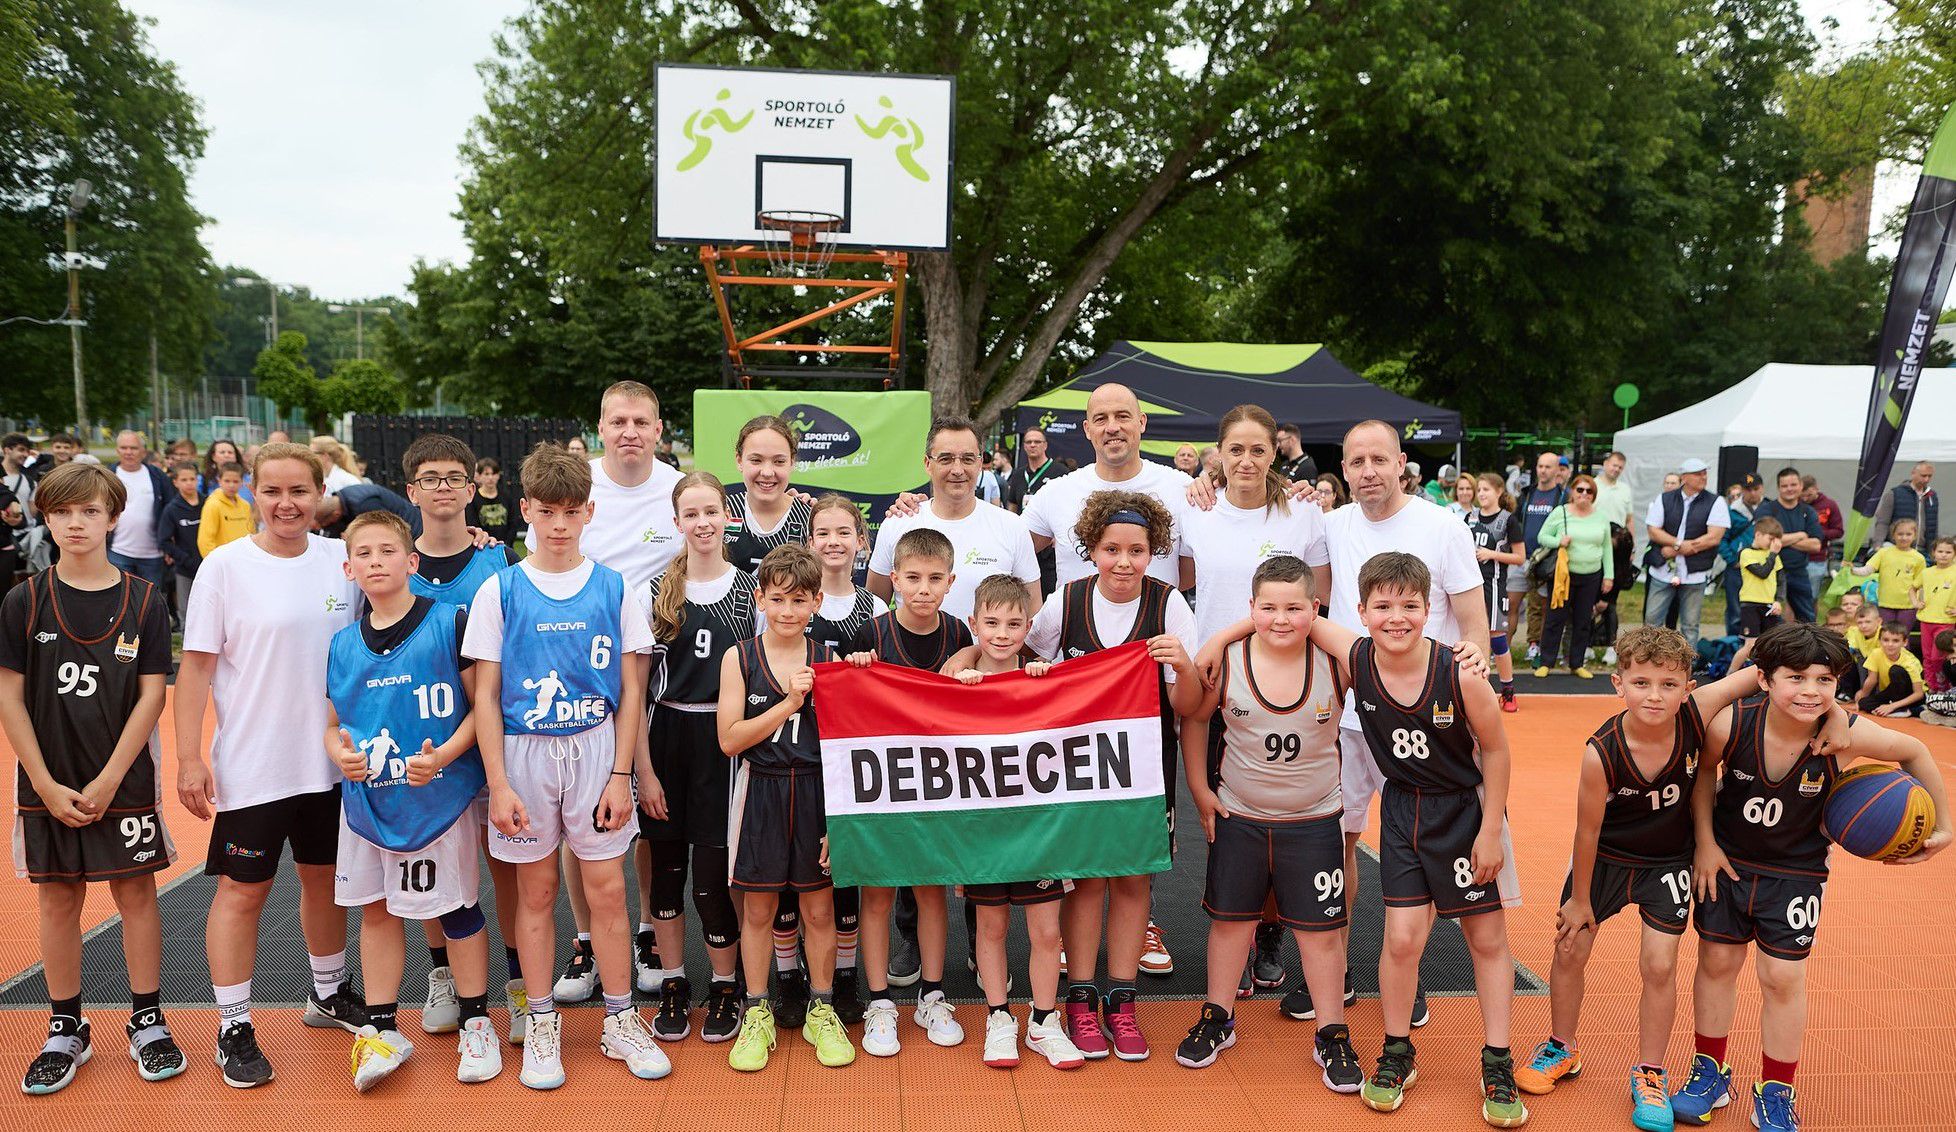 Több mint 400 diák pattogtatta a labdát Debrecenben 